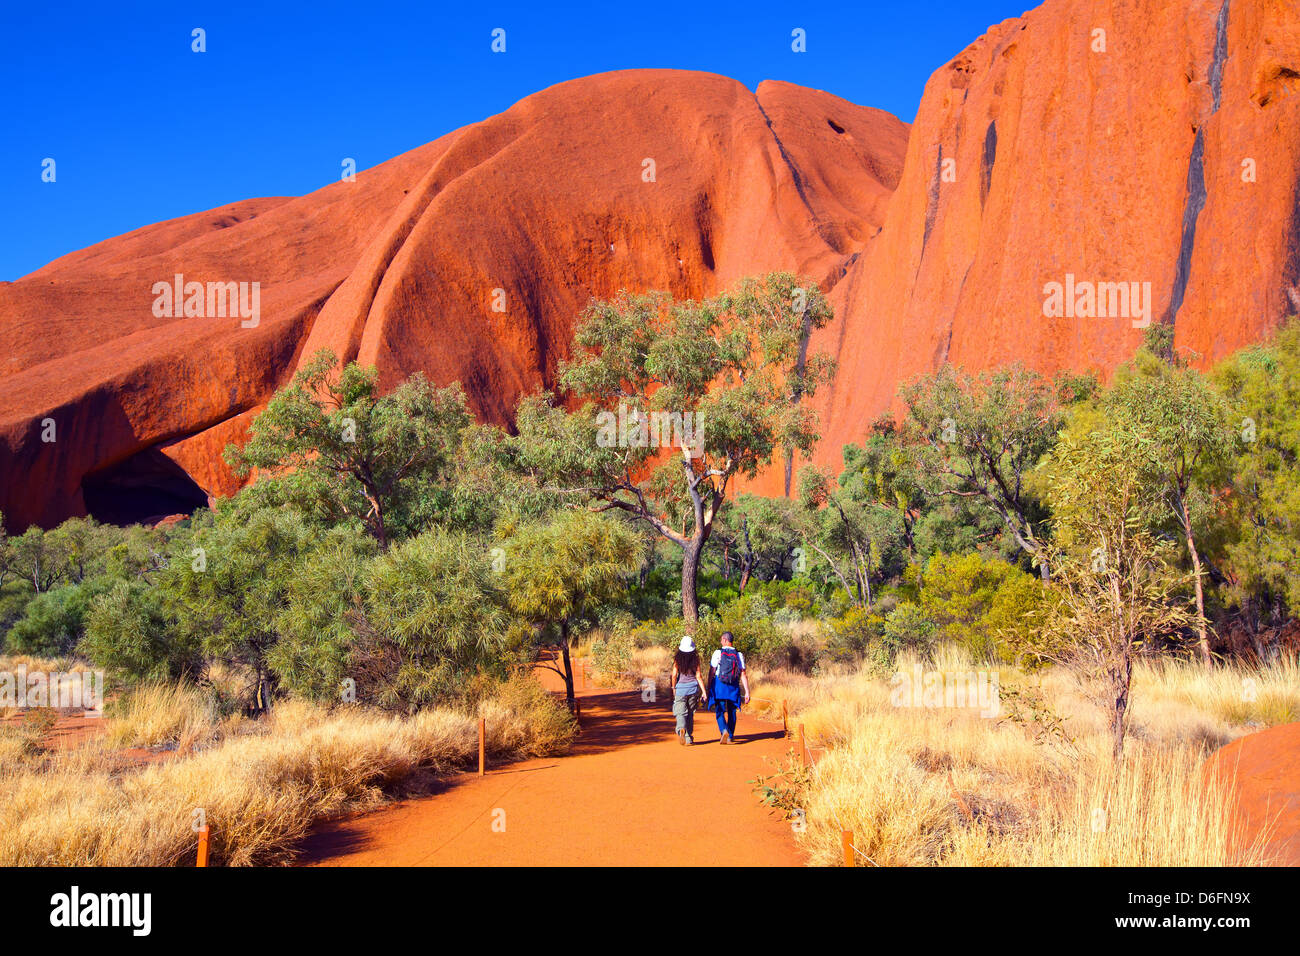 Paysages paysage australien outback Ayers Rock Uluru, dans le Territoire du Nord en Australie Centrale Banque D'Images